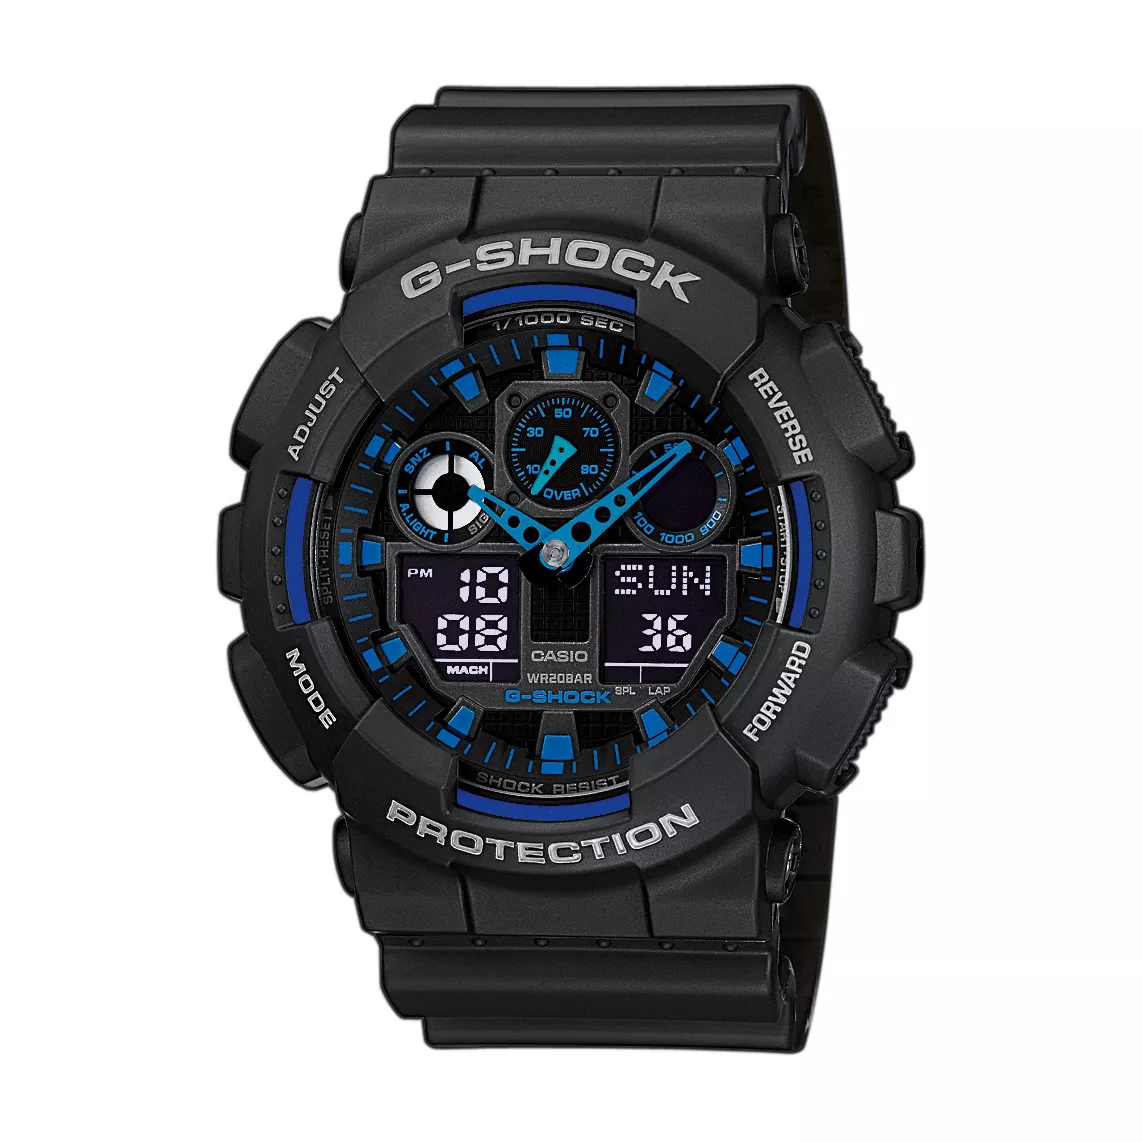 Casio GA-100-1A2ER G-Shock horloge met Alarm en Chronograaf 51,2 mm